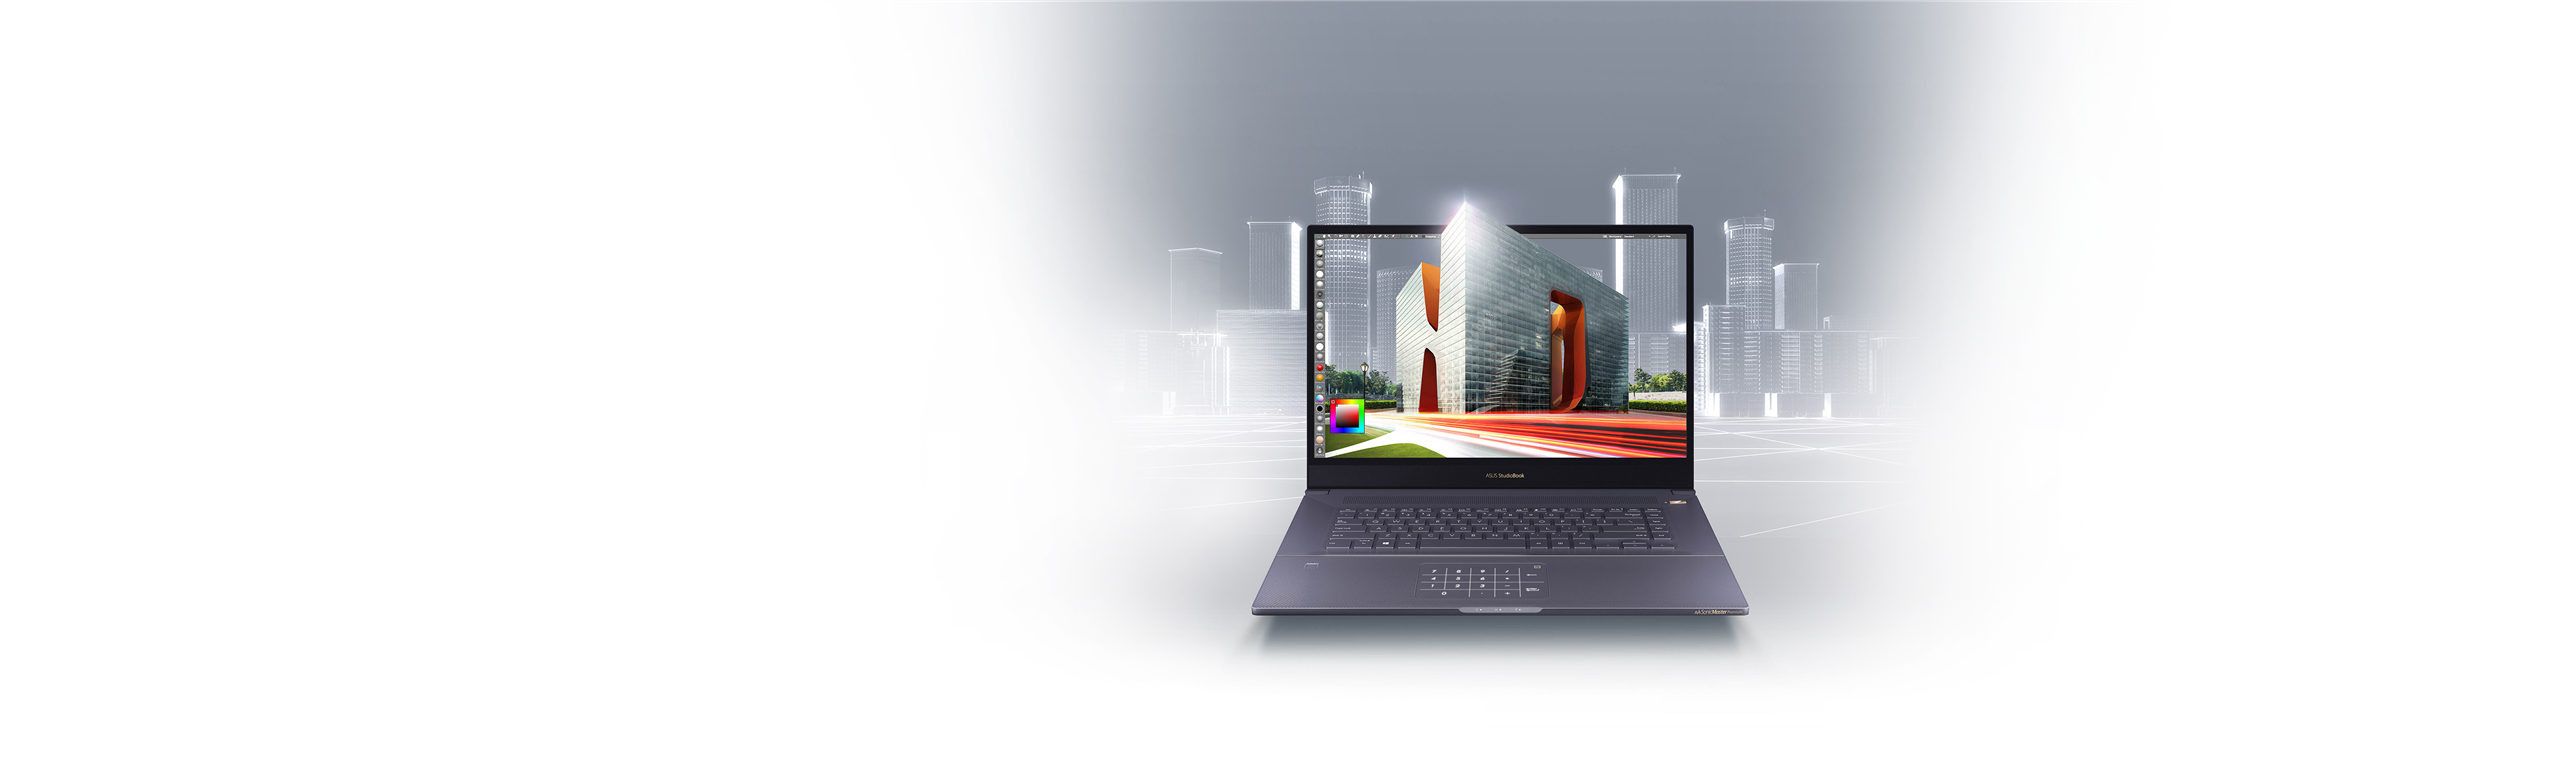 ProArt StudioBook Pro 17 W700